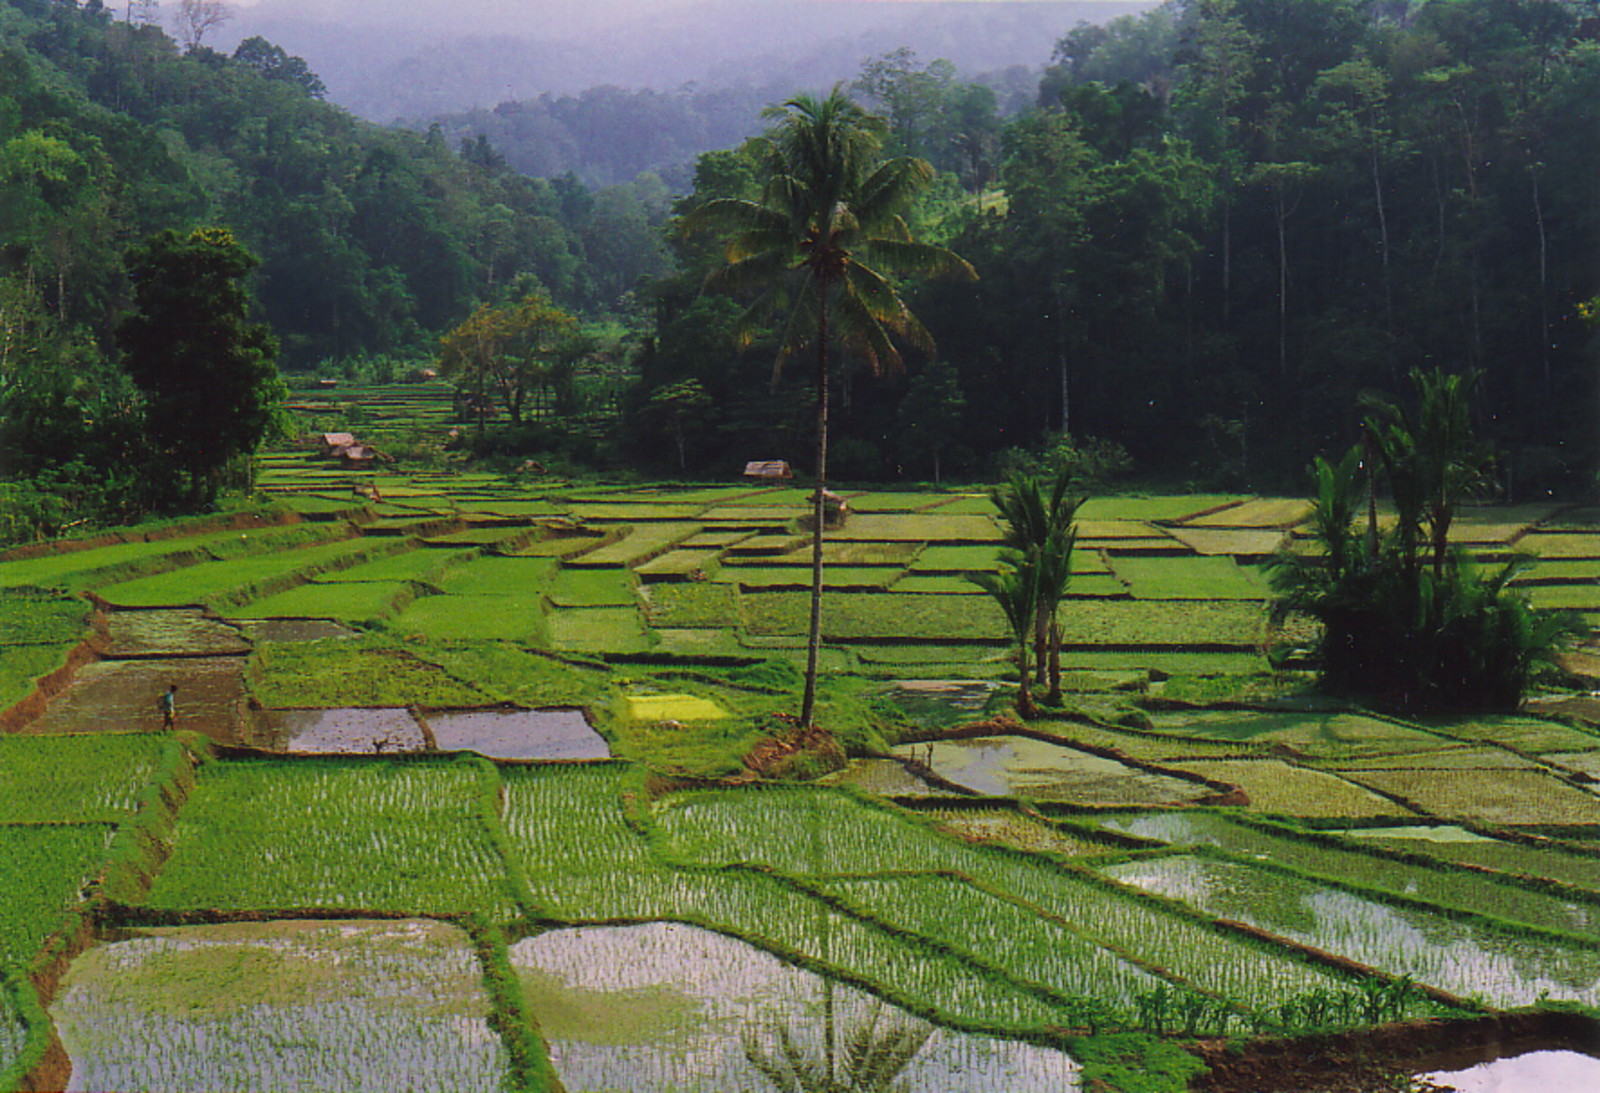 The rice paddies of Bada